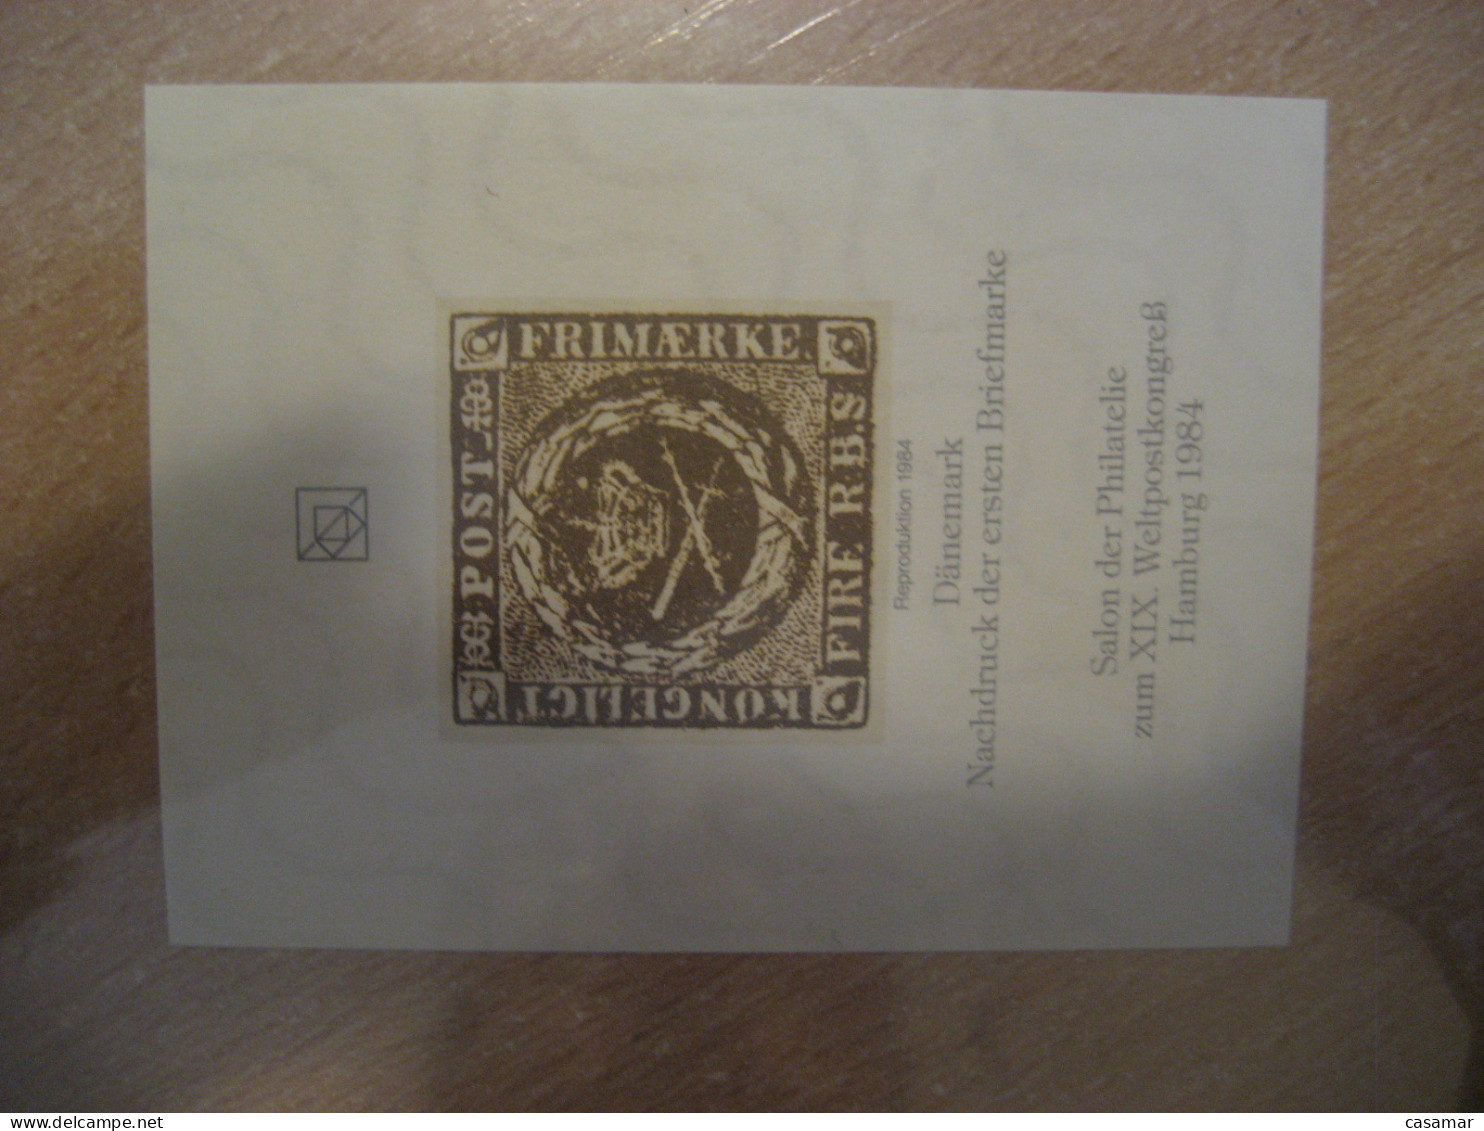 HAMBURG 1984 DENMARK Imperforated Reproduktion Proof Epreuve Nachdruck Poster Stamp Vignette GERMANY Label - Probe- Und Nachdrucke